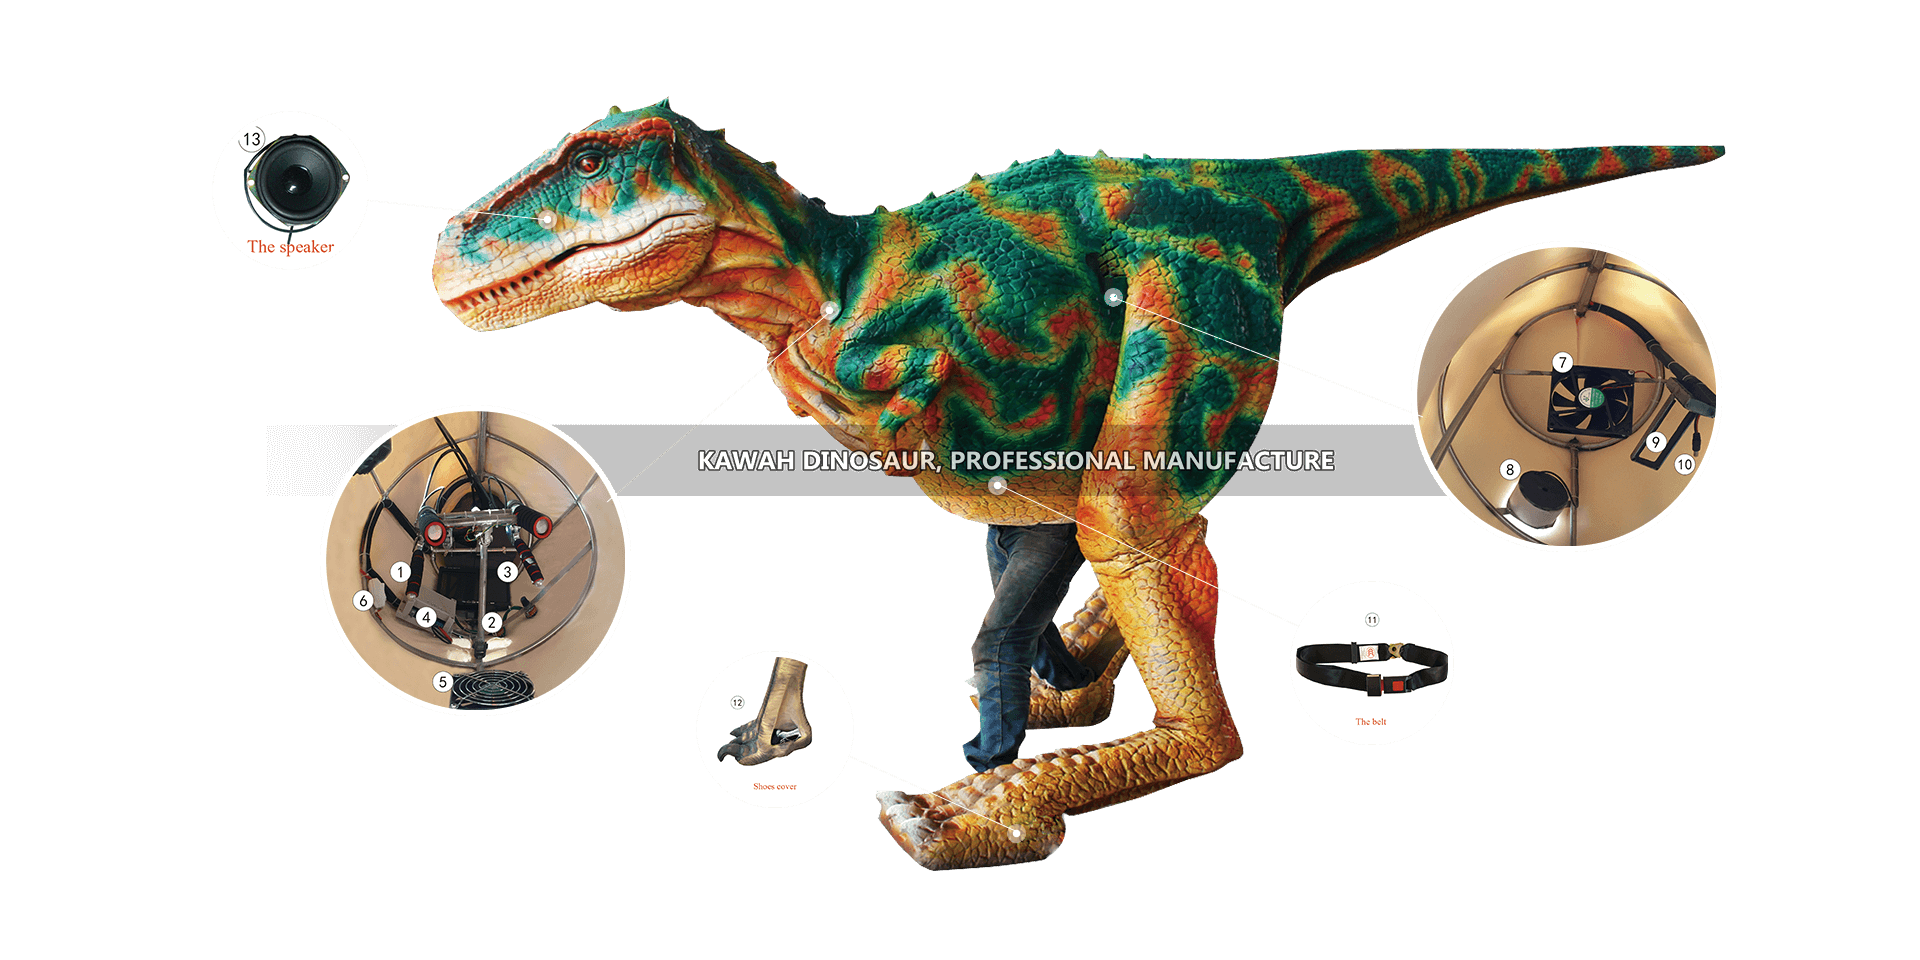 Dinozawr geýimini, bölekleri we materiallary taýýarlamagyň ähli prosesi